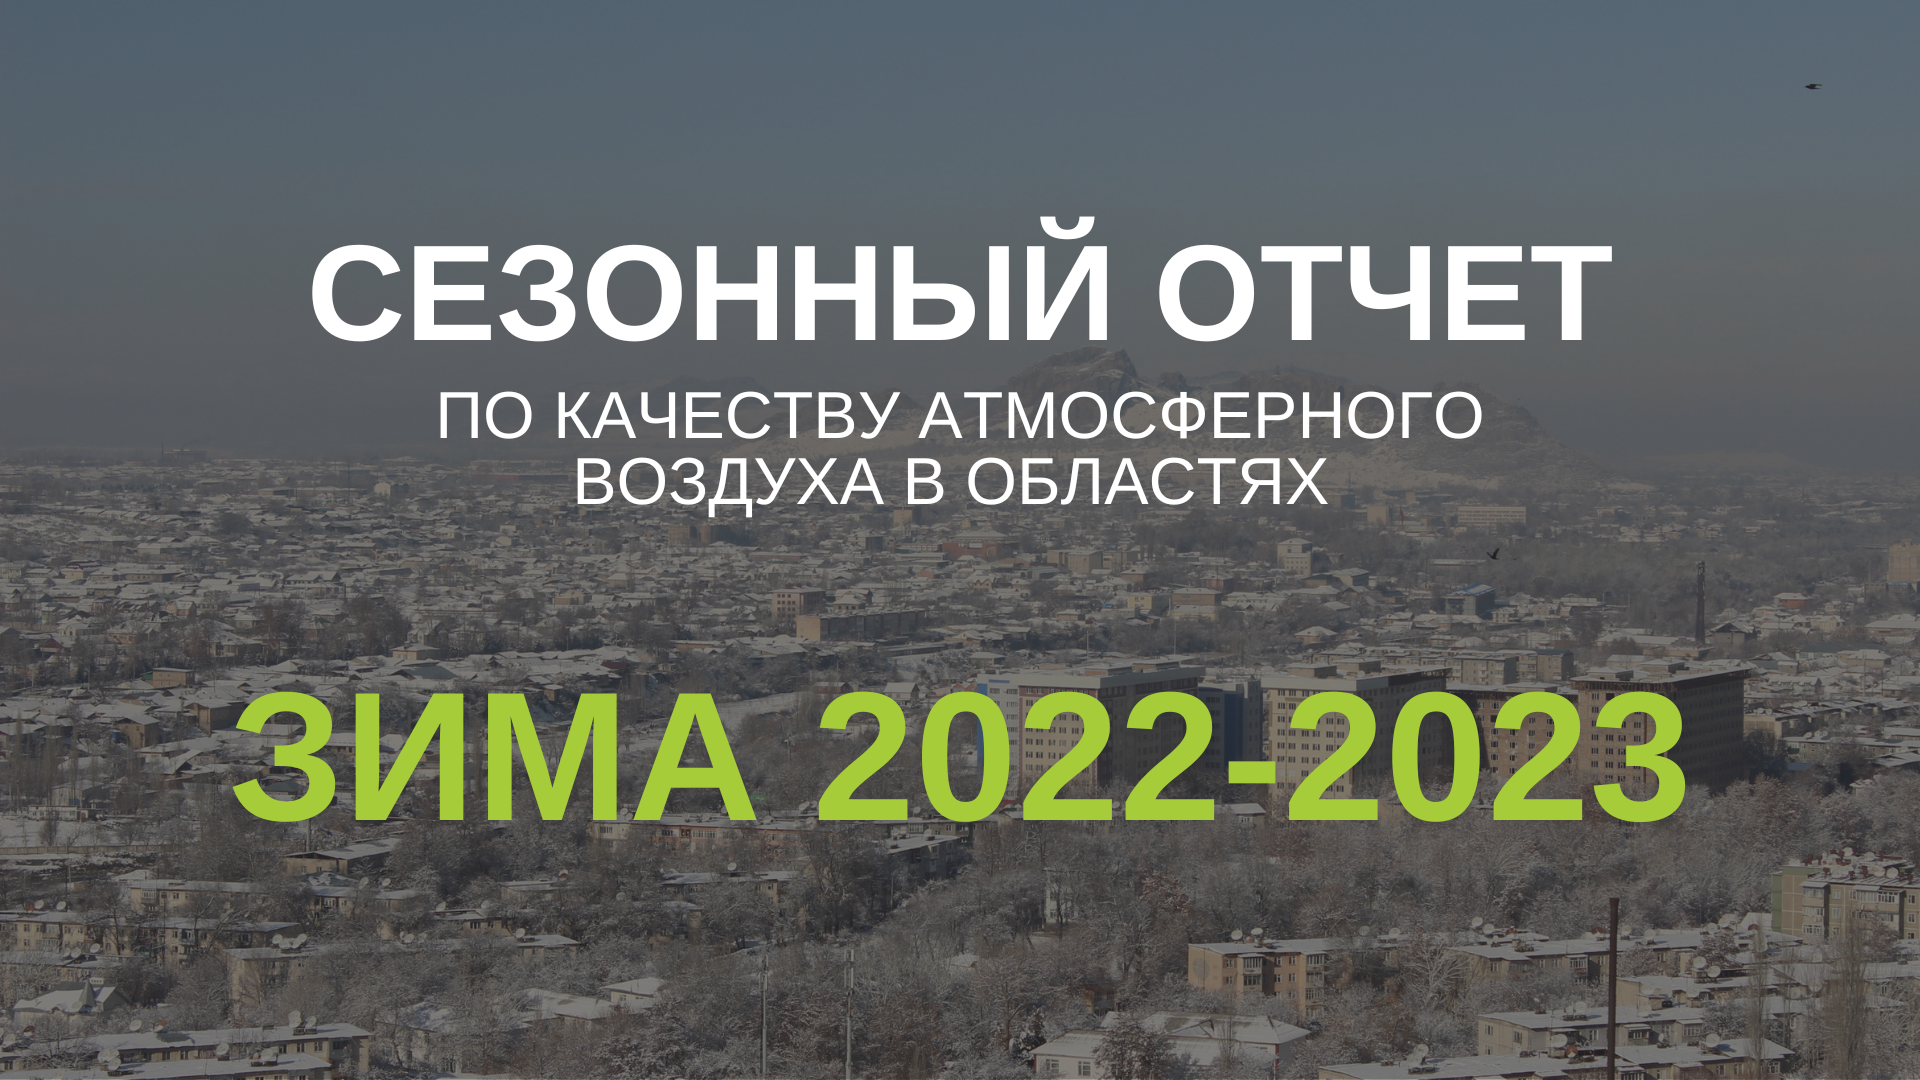 (Русский) Зима 2022-2023. Сезонный отчет по качеству атмосферного воздуха в областях и вкрупных регионах Кыргызстана